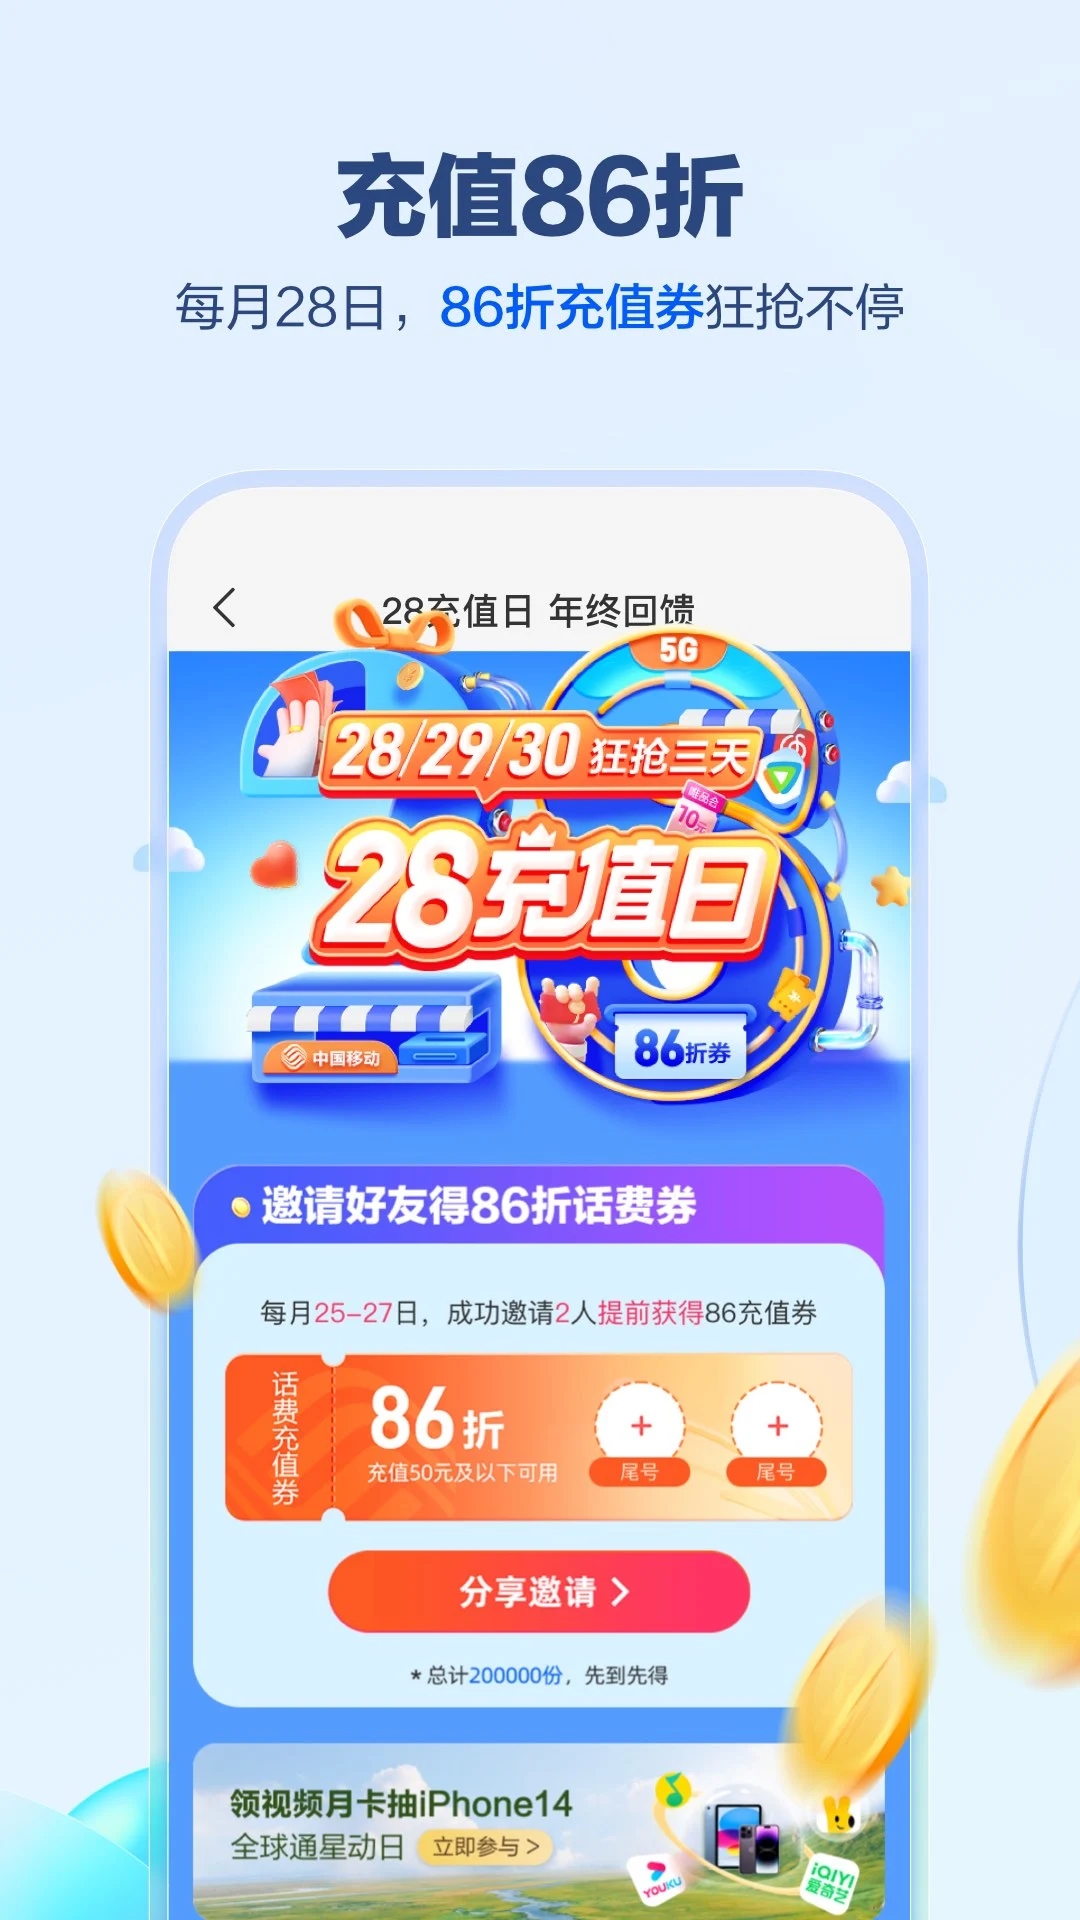 中国移动app免费下载安装下载